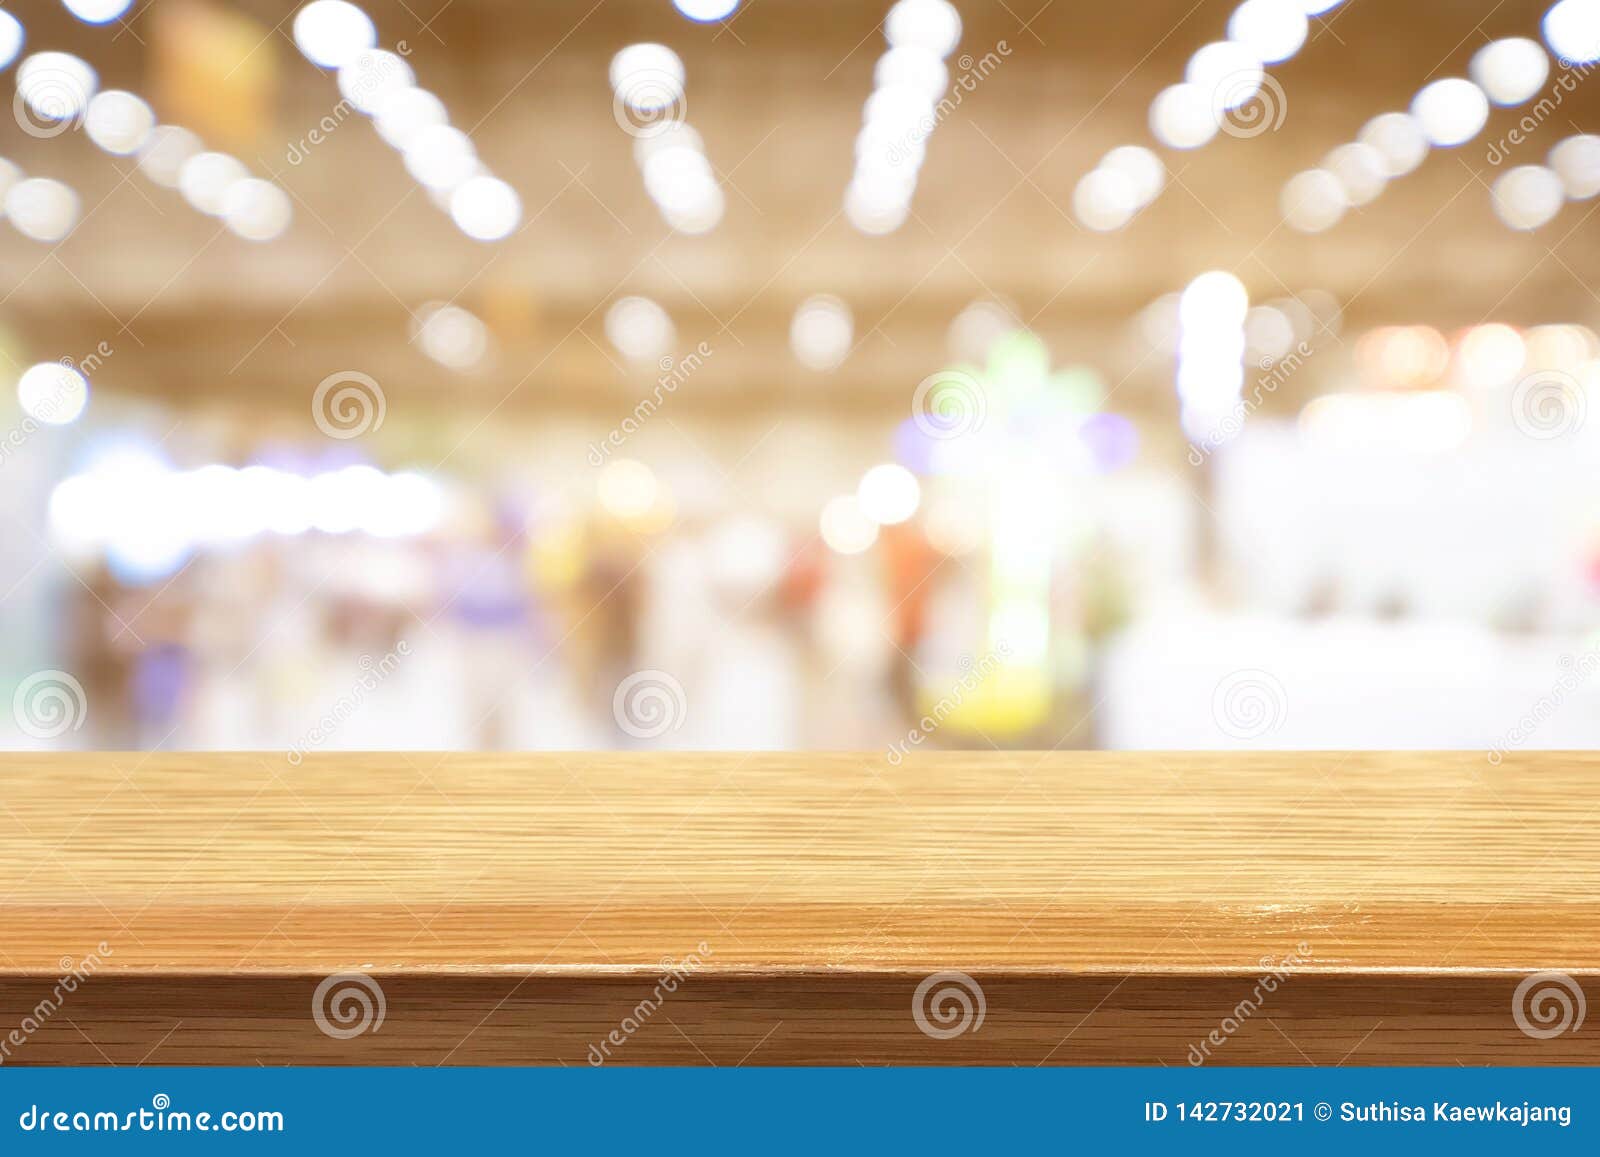 Bàn gỗ - Được làm từ chất liệu gỗ sang trọng và bền bỉ, bàn gỗ này là một sản phẩm đẹp và chắc chắn. Với mẫu mã thiết kế tuyệt đẹp và chất liệu độc đáo, bàn gỗ này không chỉ là một sản phẩm nội thất sang trọng mà còn là một món đồ trang trí đẹp mắt.